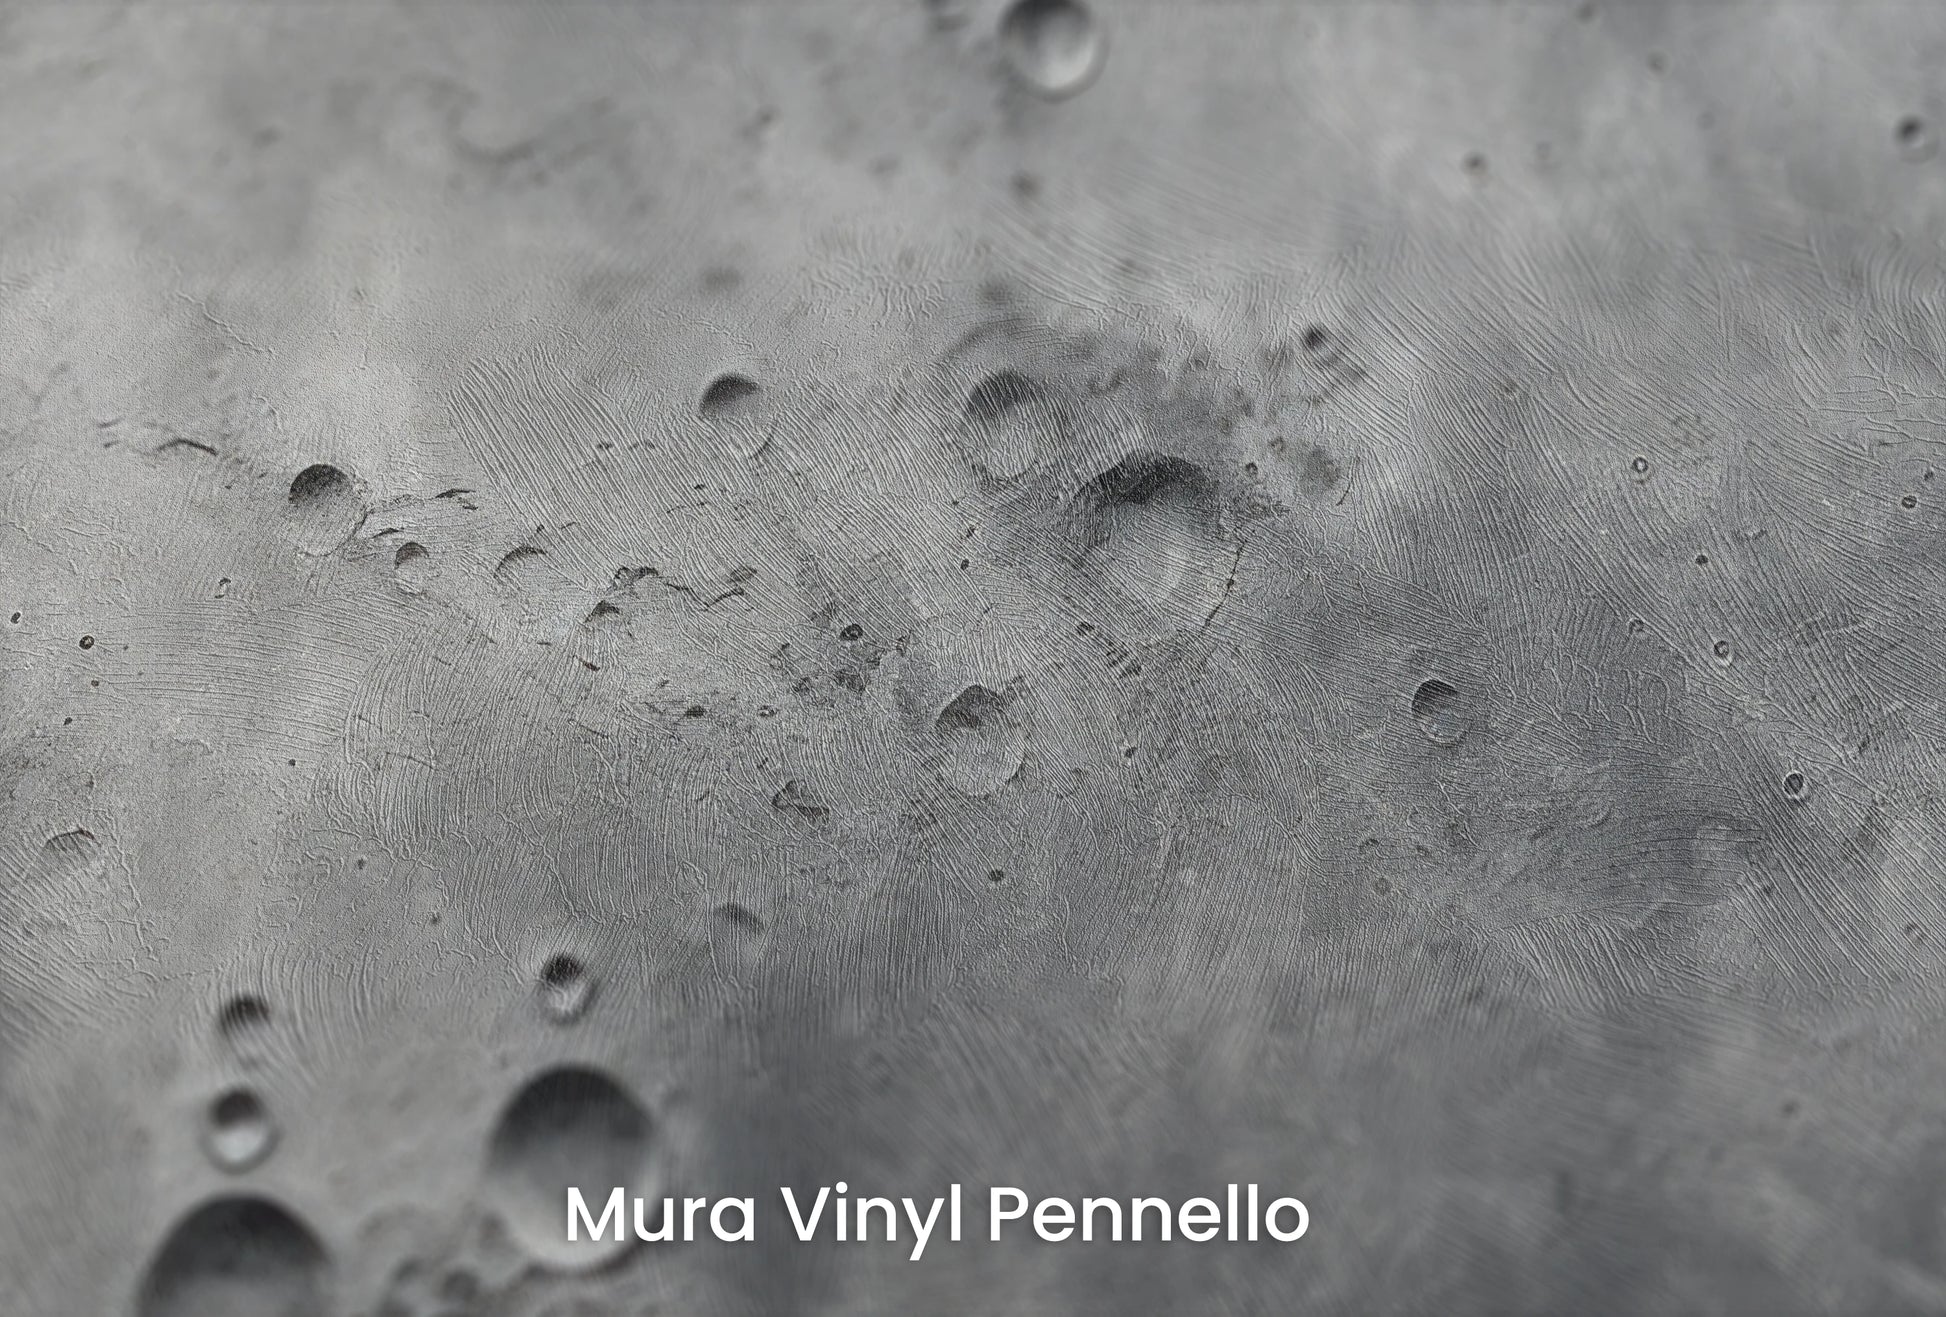 Zbliżenie na artystyczną fototapetę o nazwie Lunar Surface na podłożu Mura Vinyl Pennello - faktura pociągnięć pędzla malarskiego.